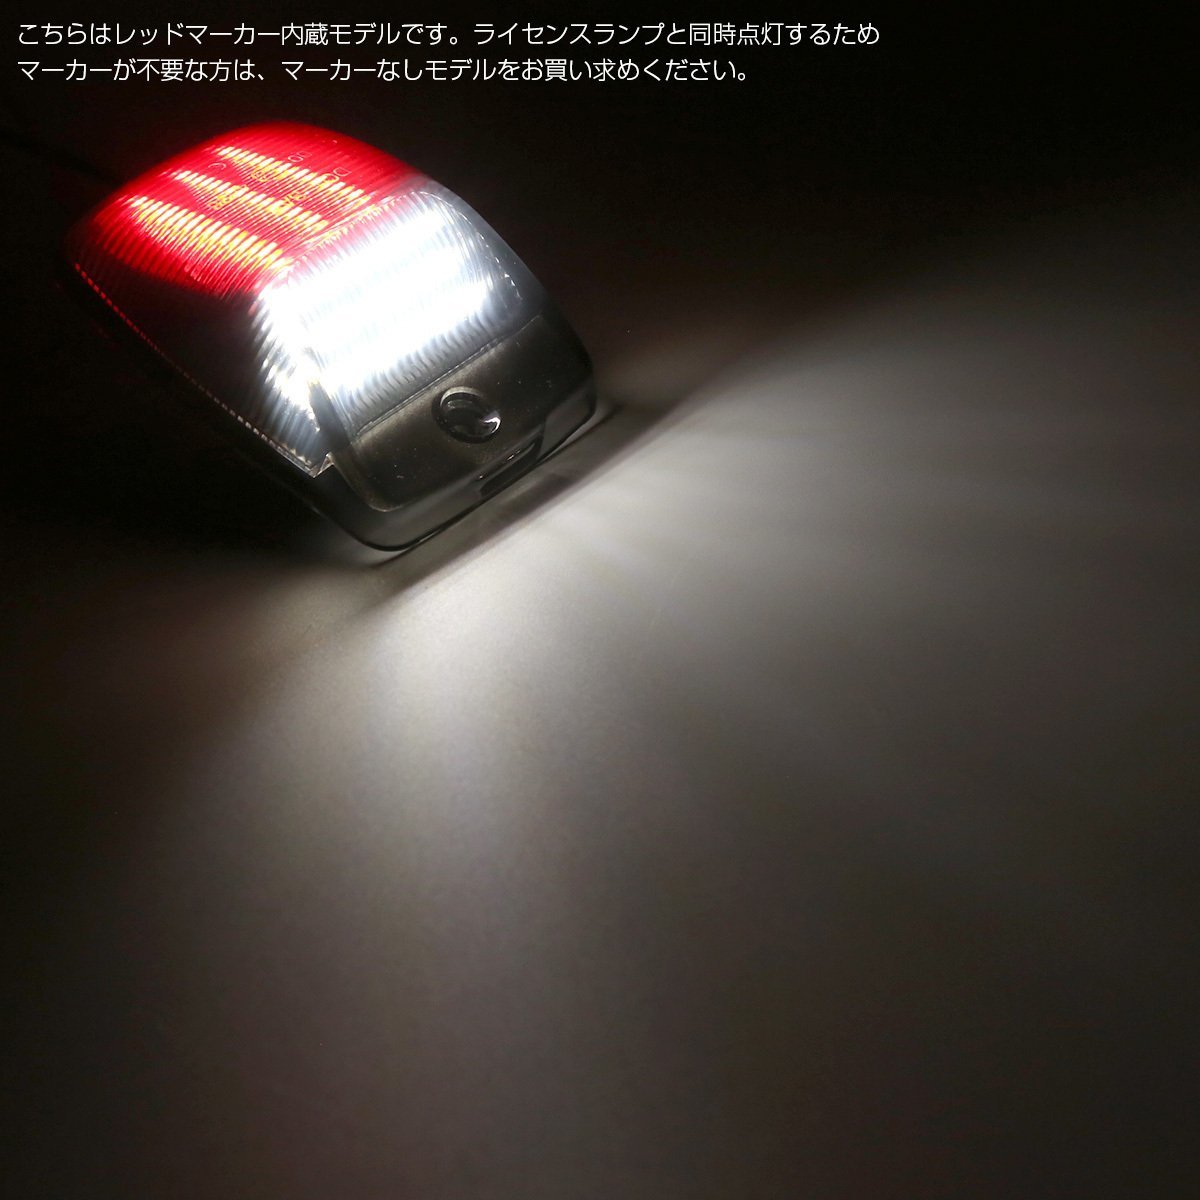 LED ライセンスランプ タンドラ Thundra 2006-2013 タコマ Tacoma 2004-2015 レッドマーカー付き 純正ユニット交換 ナンバー灯 RZ456_画像3